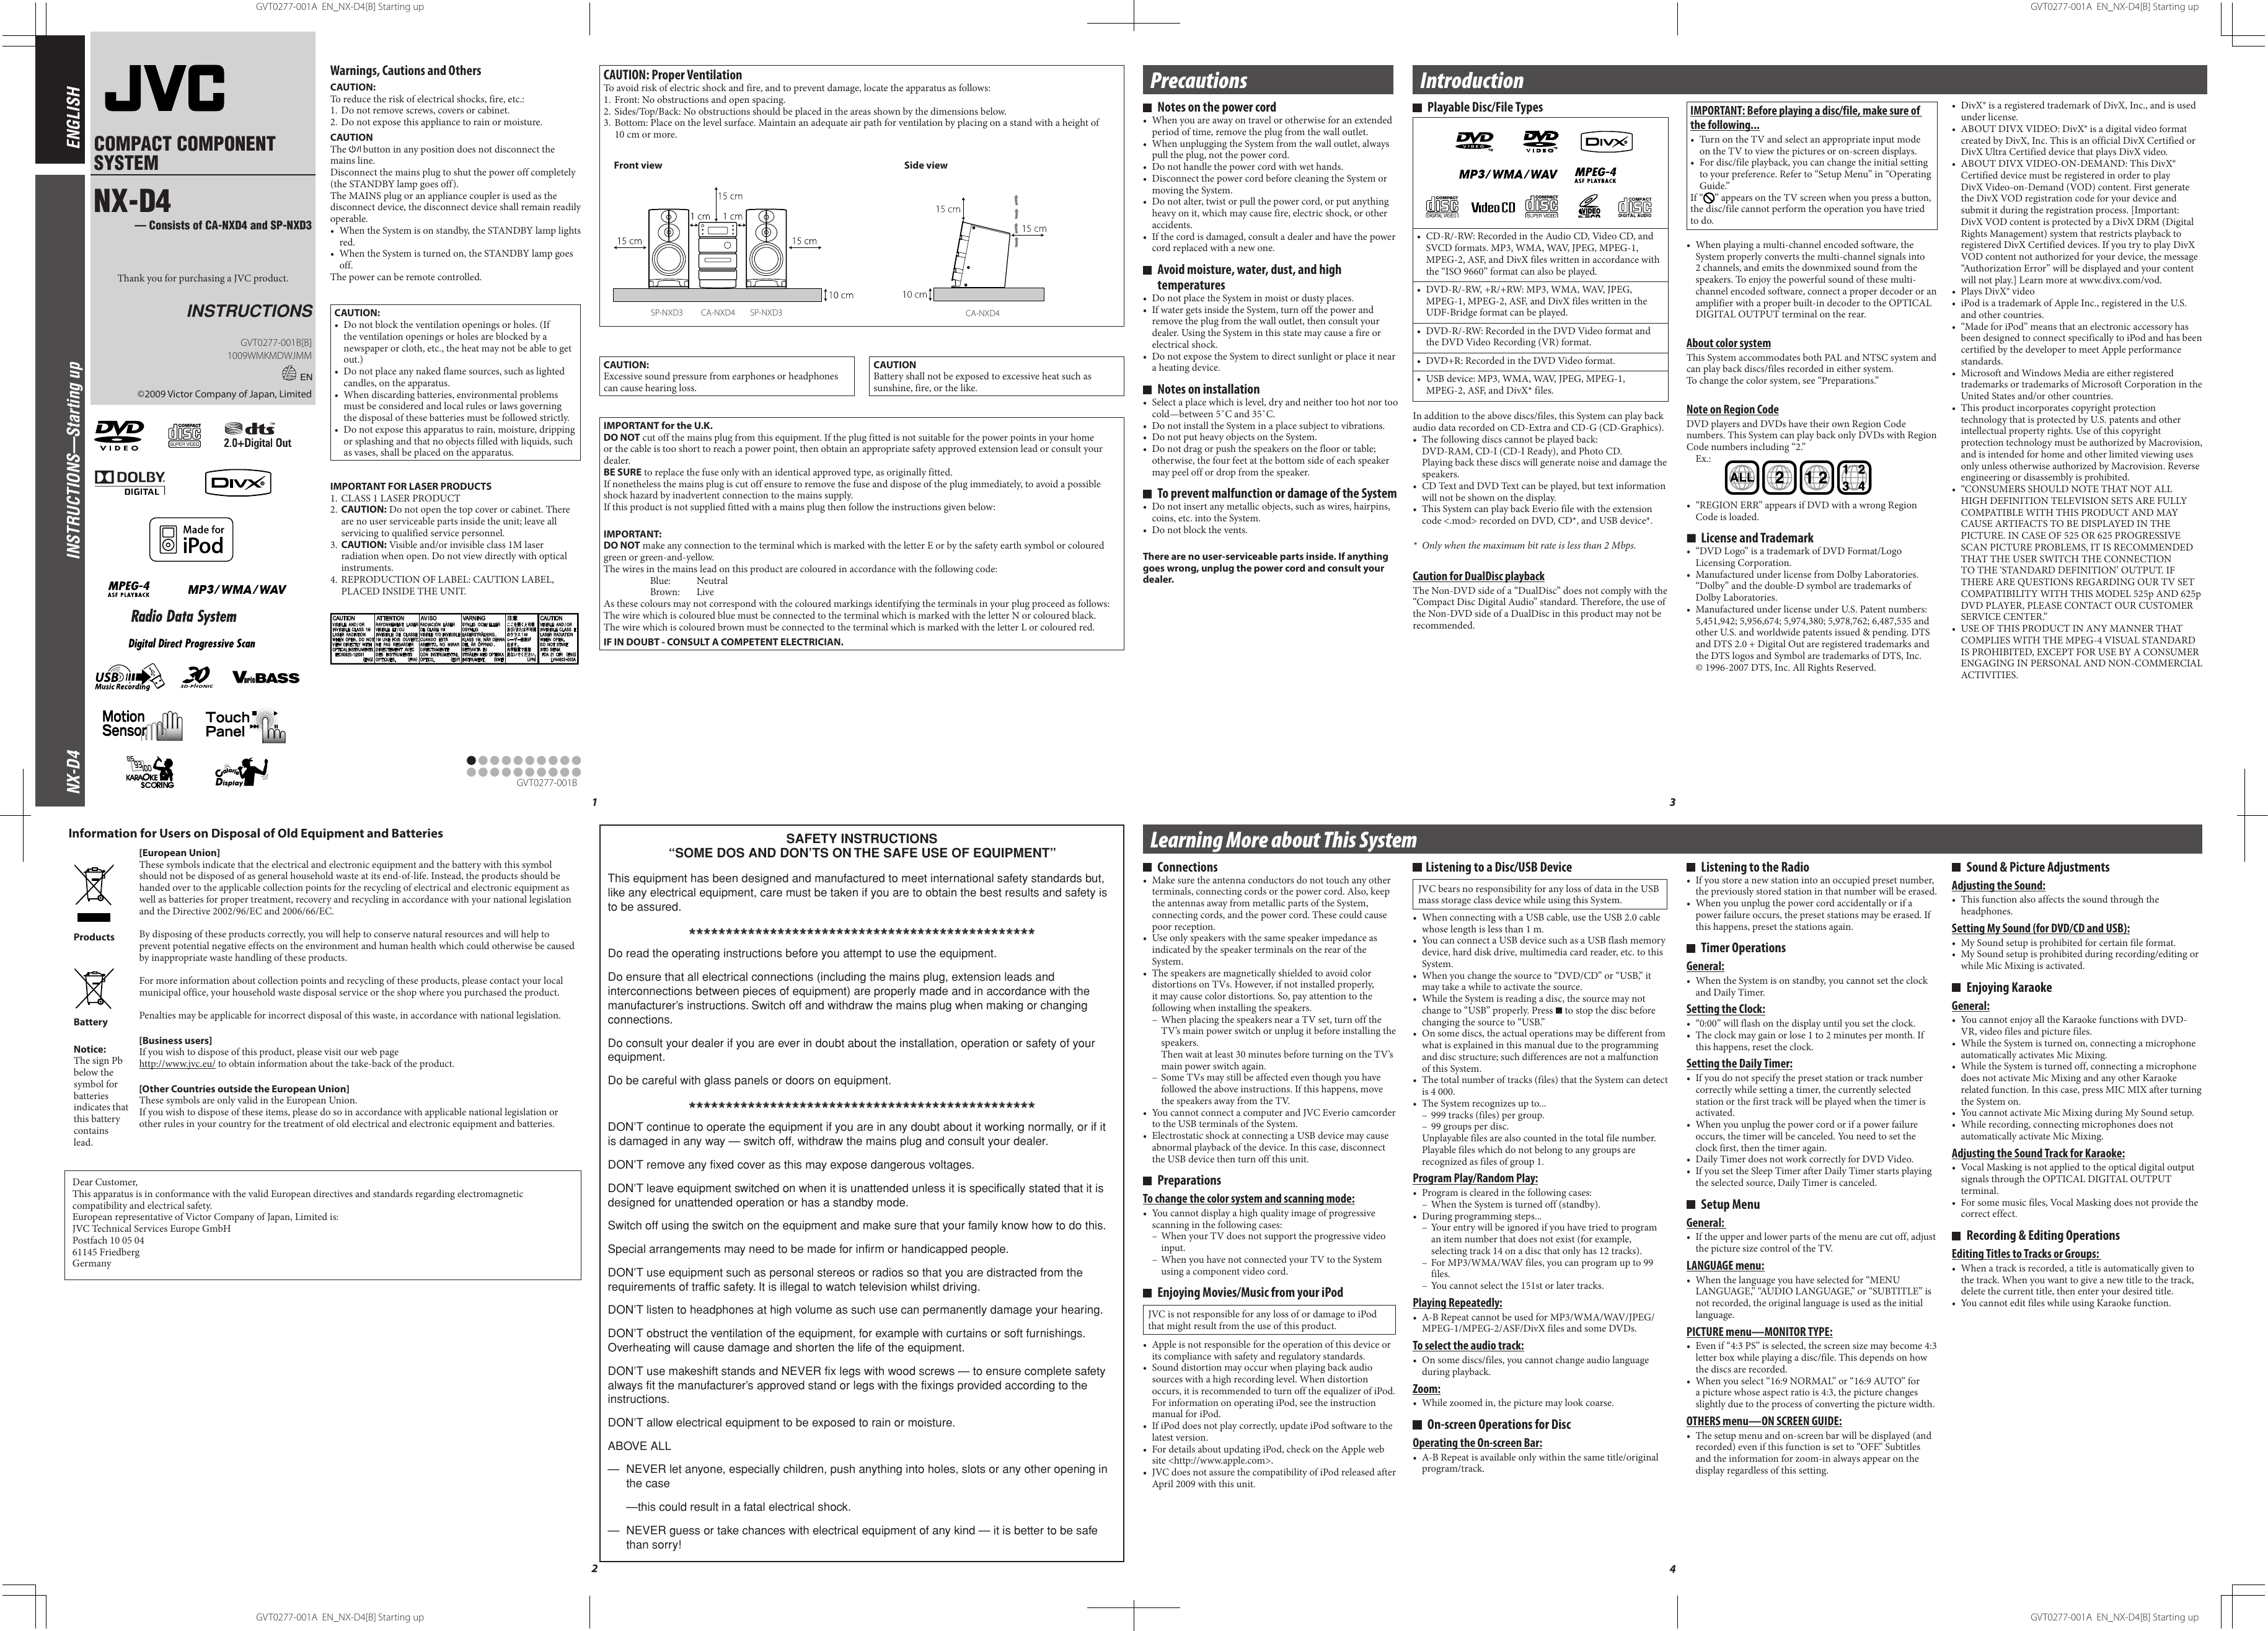 Page 1 of 2 - JVC NX-D4B NX-D4[B] User Manual GVT0277-001B